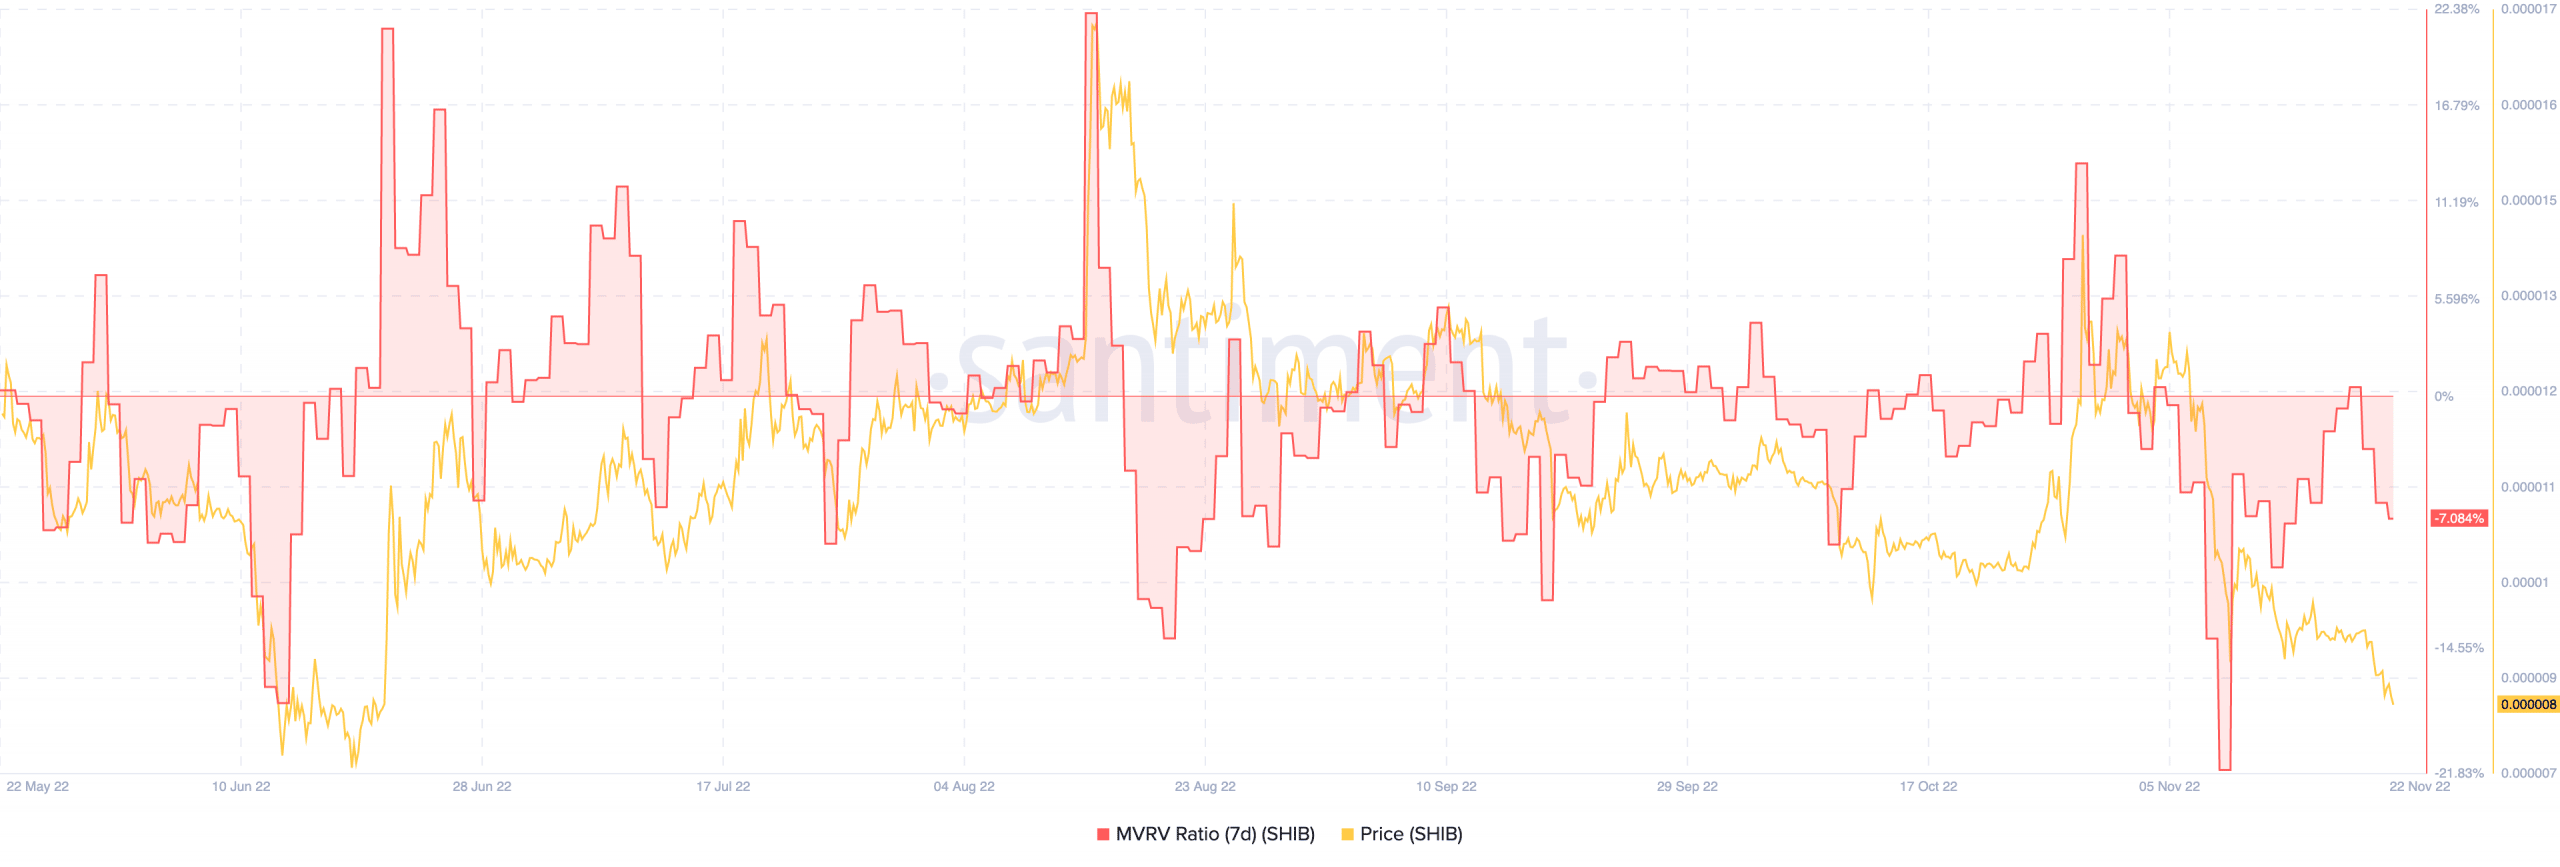 Shiba Inu price and MVRV ratio